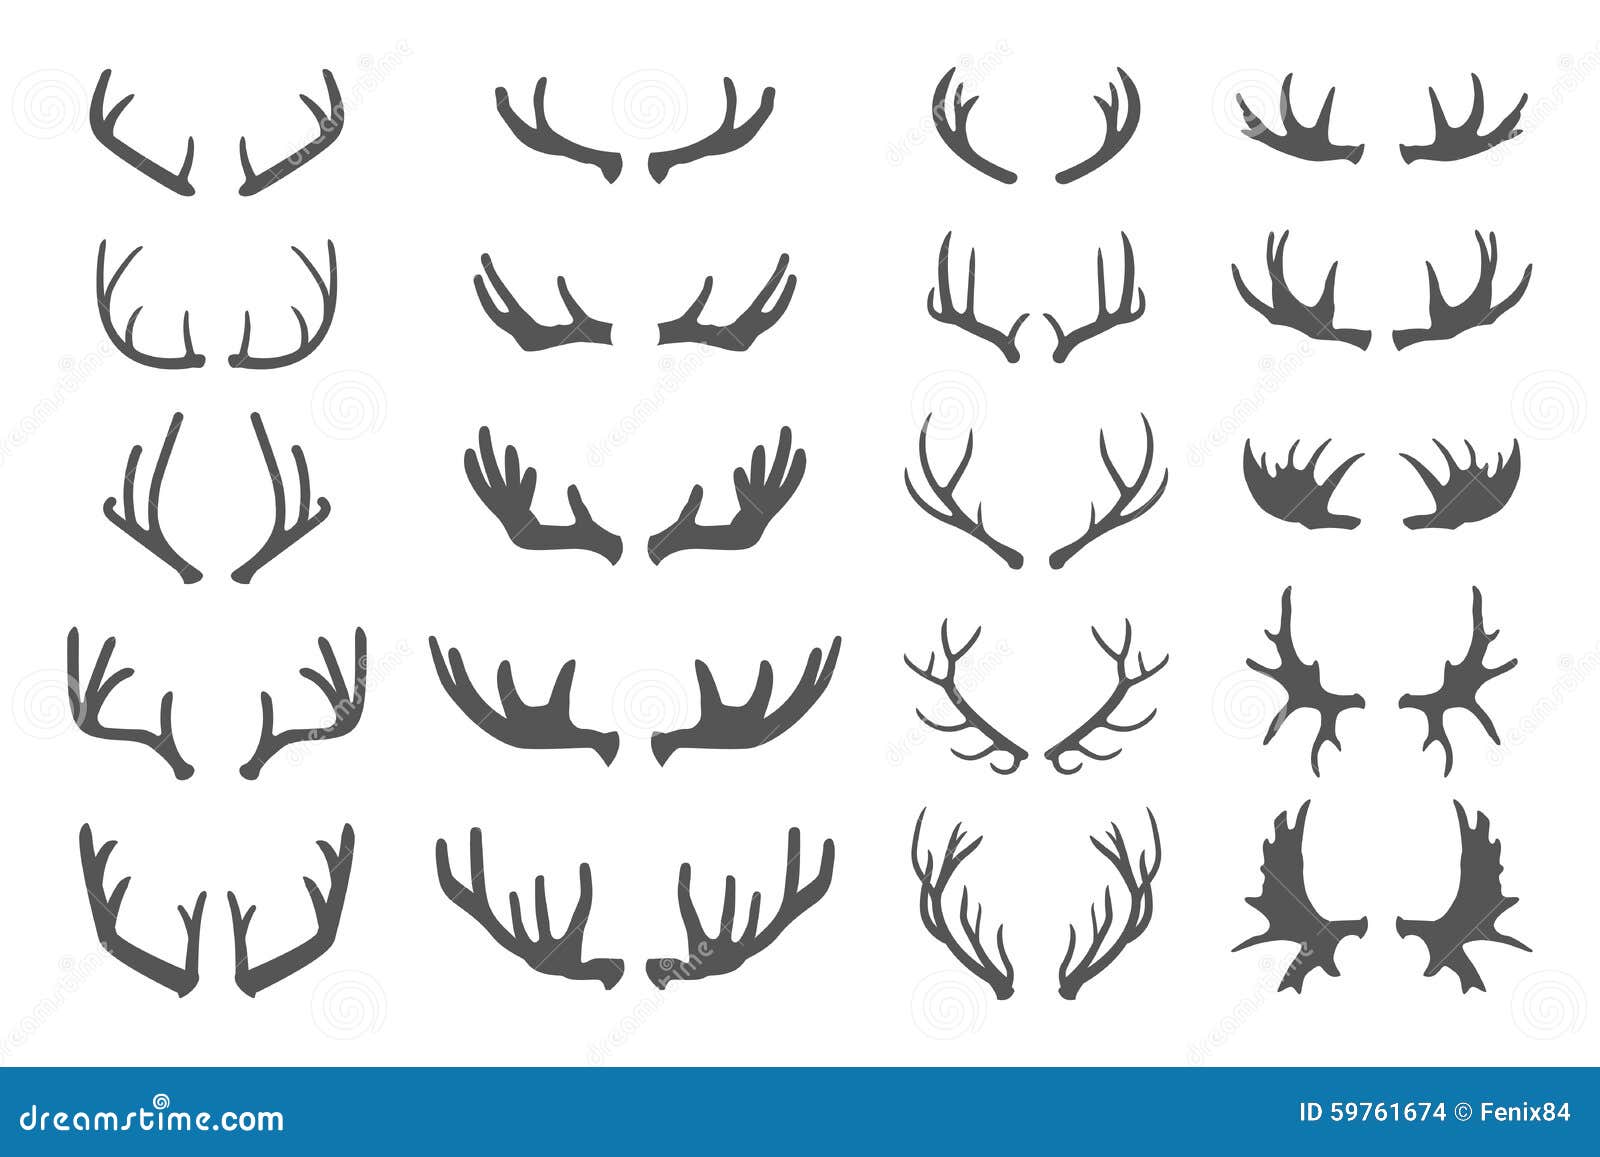 deer antlers.